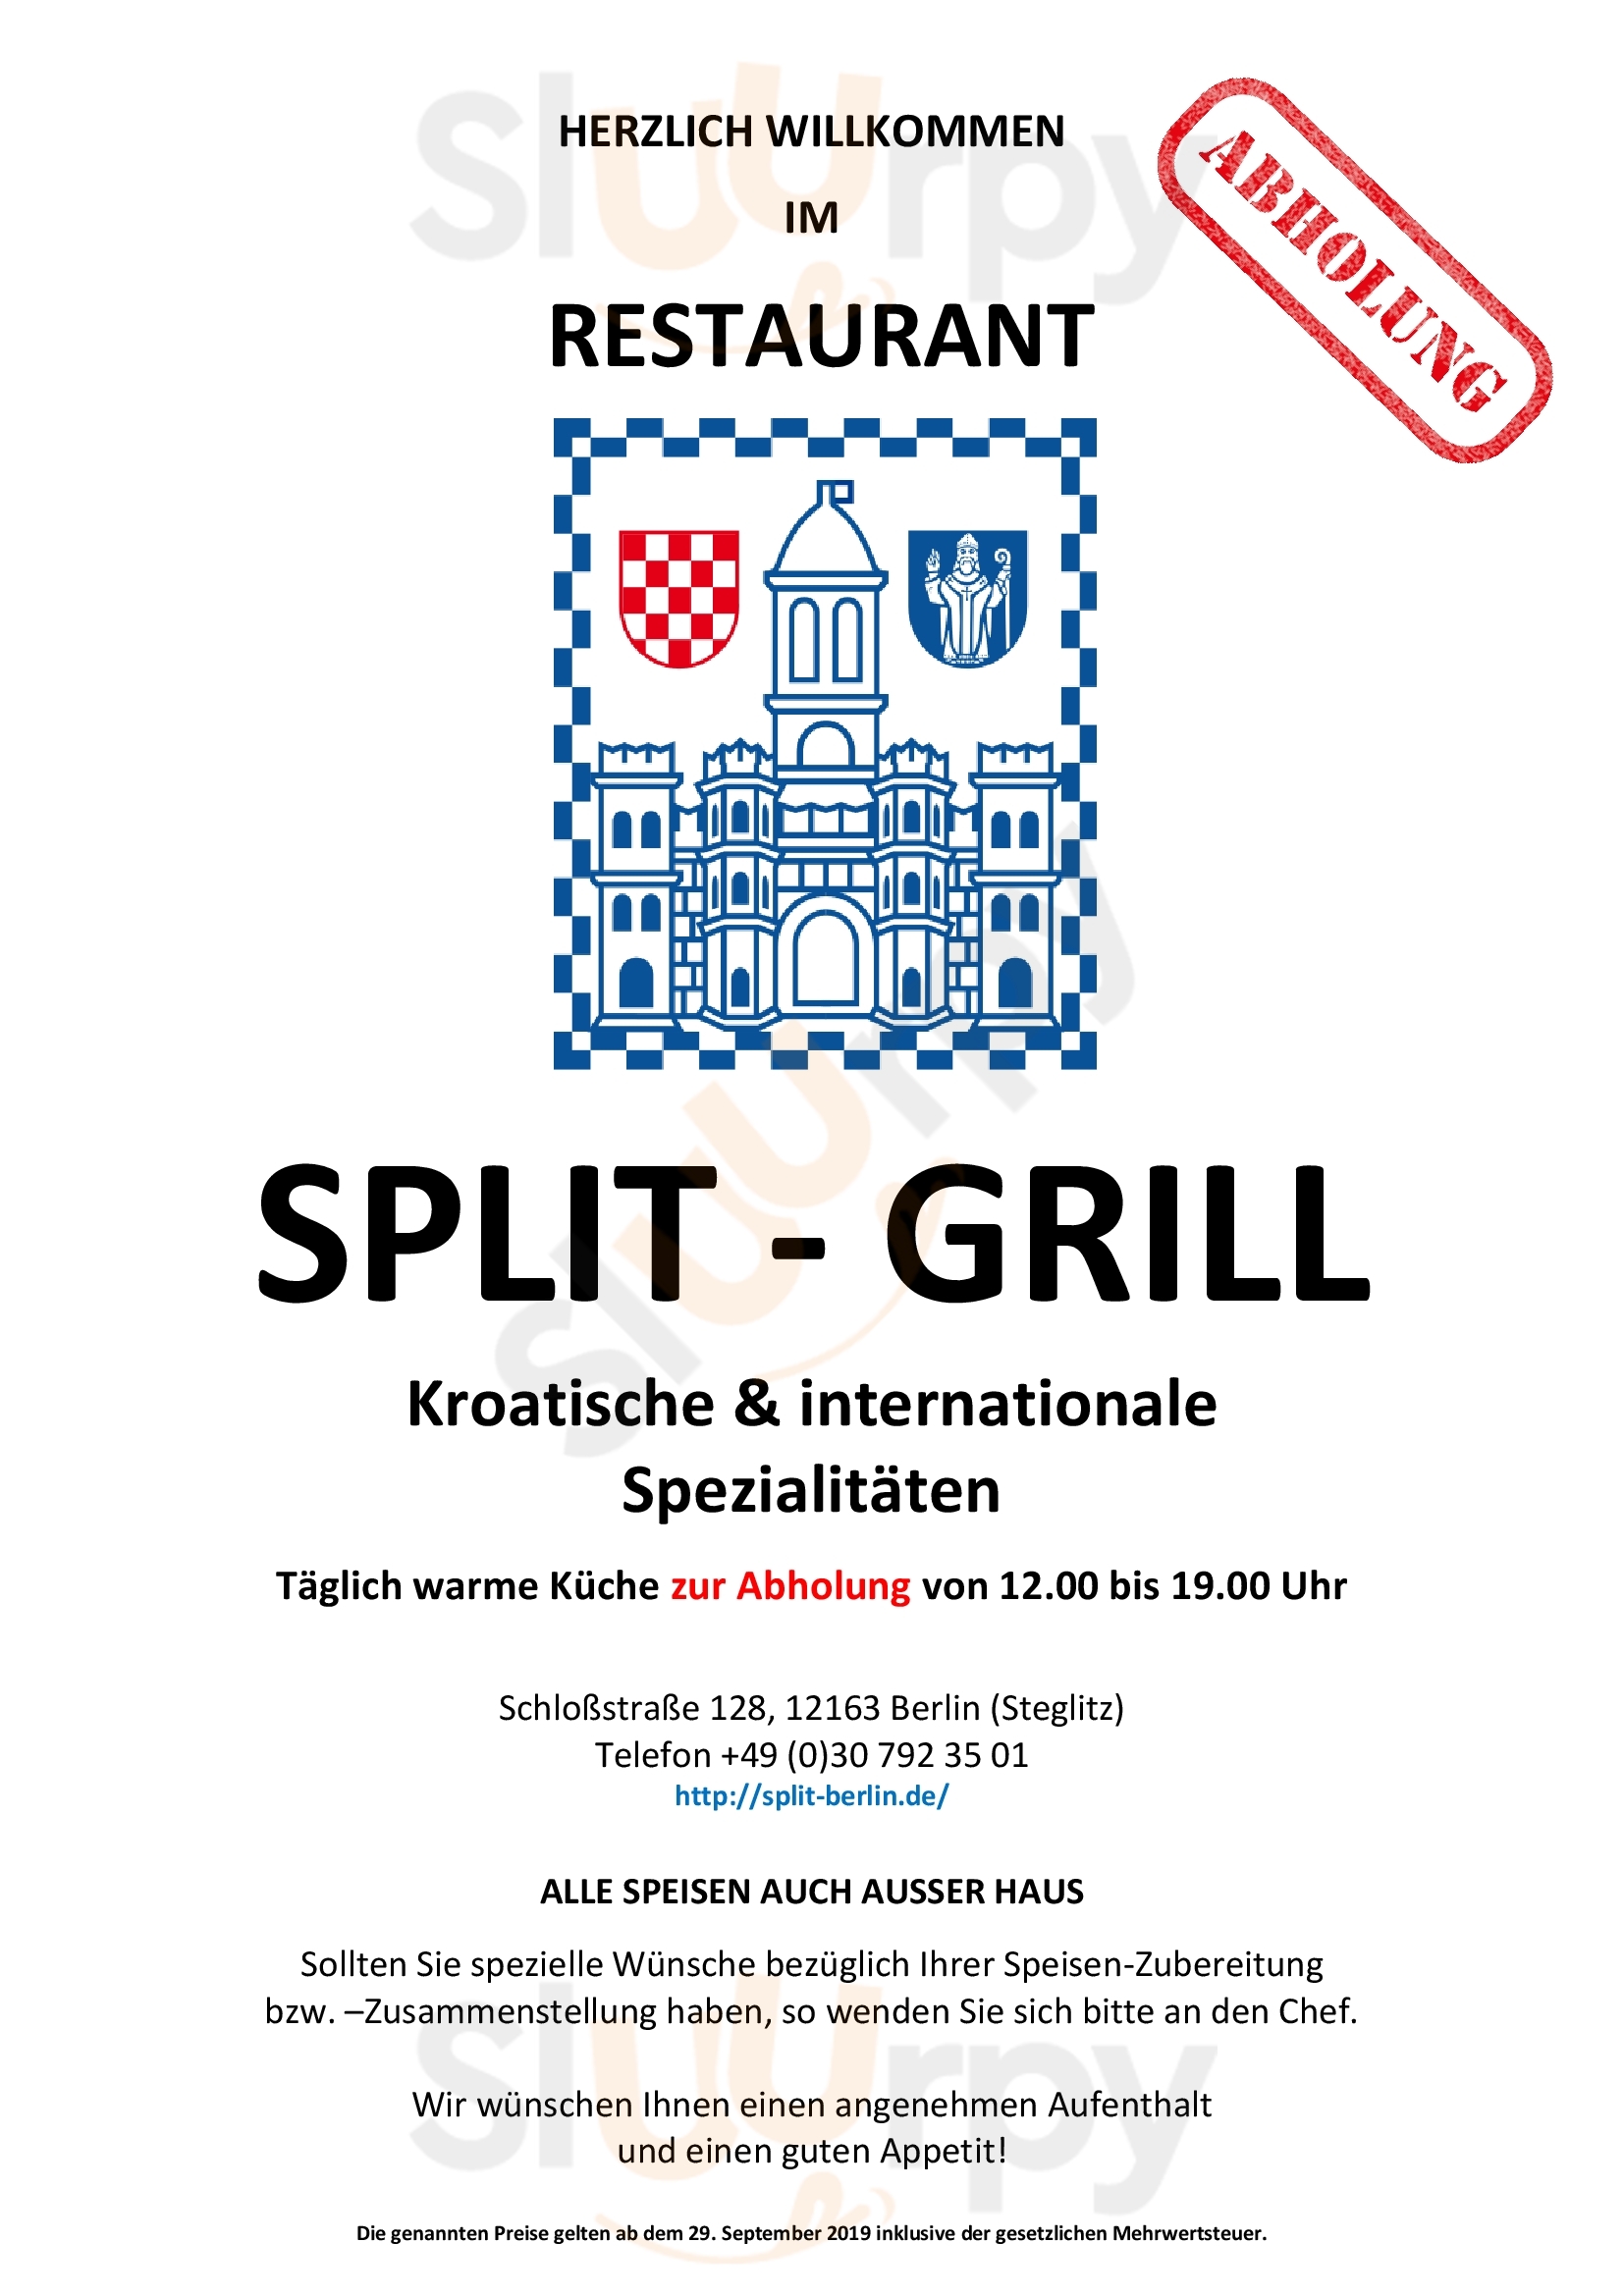 Split-grill Berlin Menu - 1